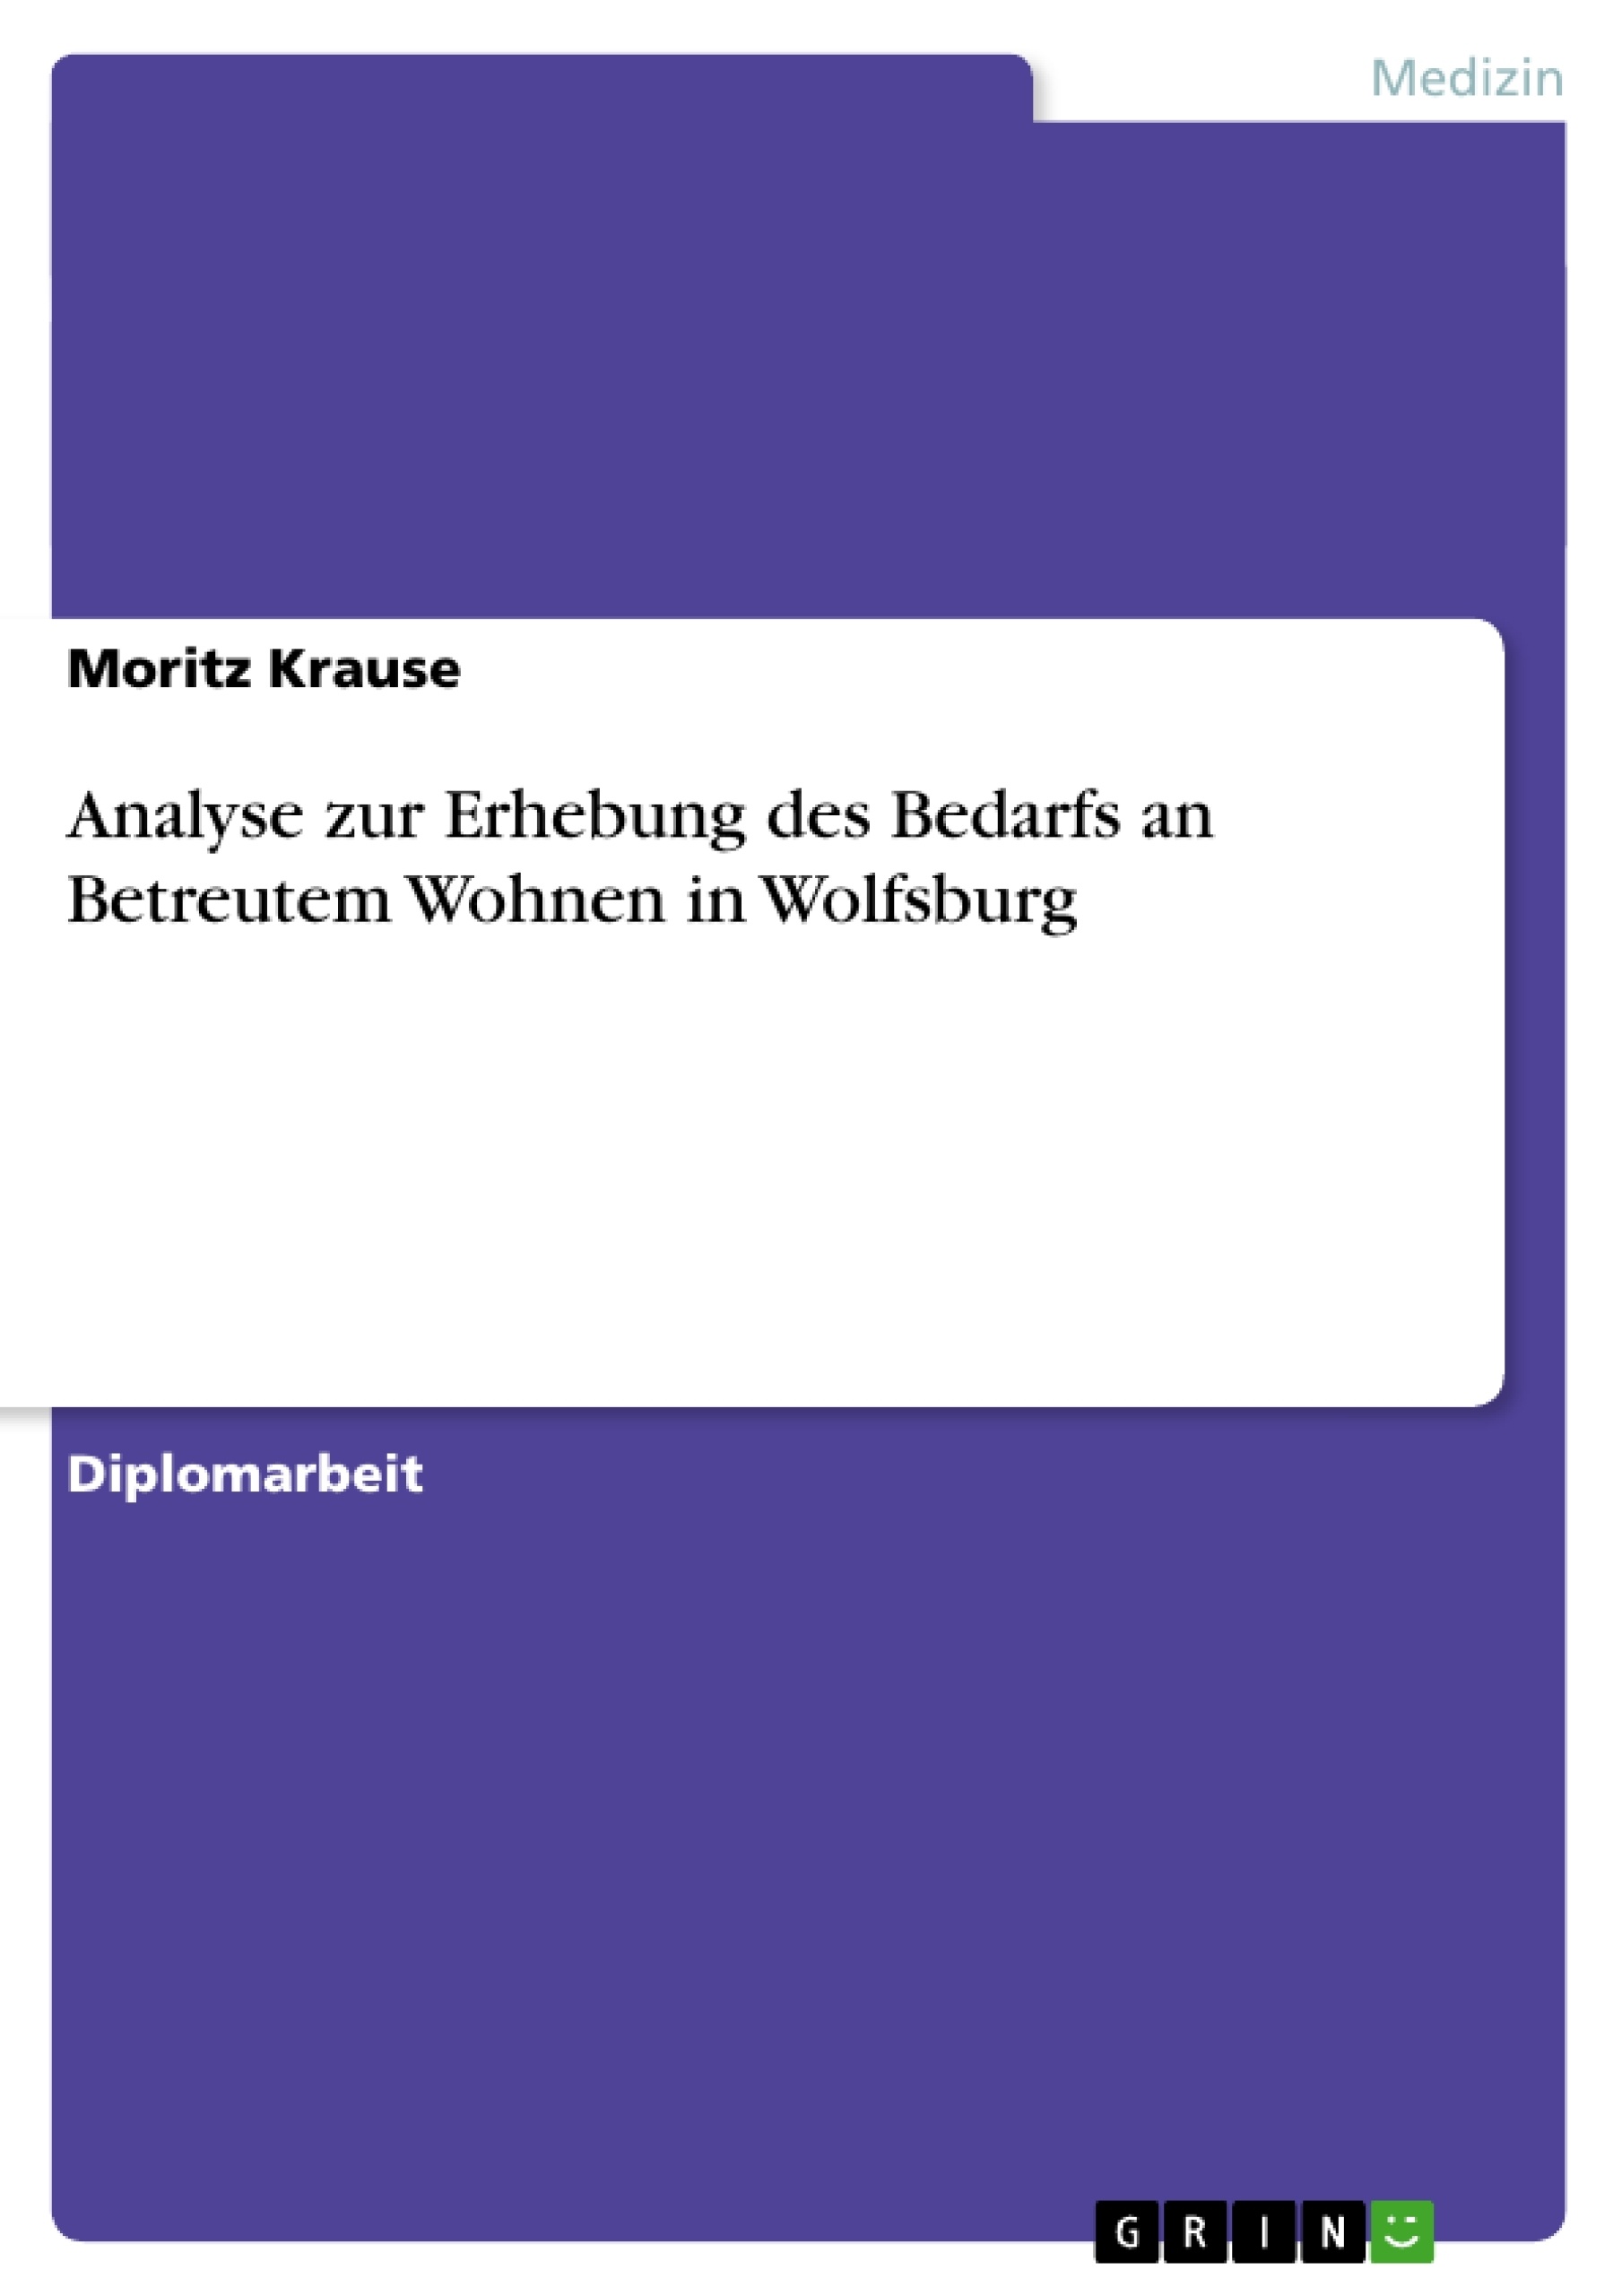 Título: Analyse zur Erhebung des Bedarfs an Betreutem Wohnen in Wolfsburg